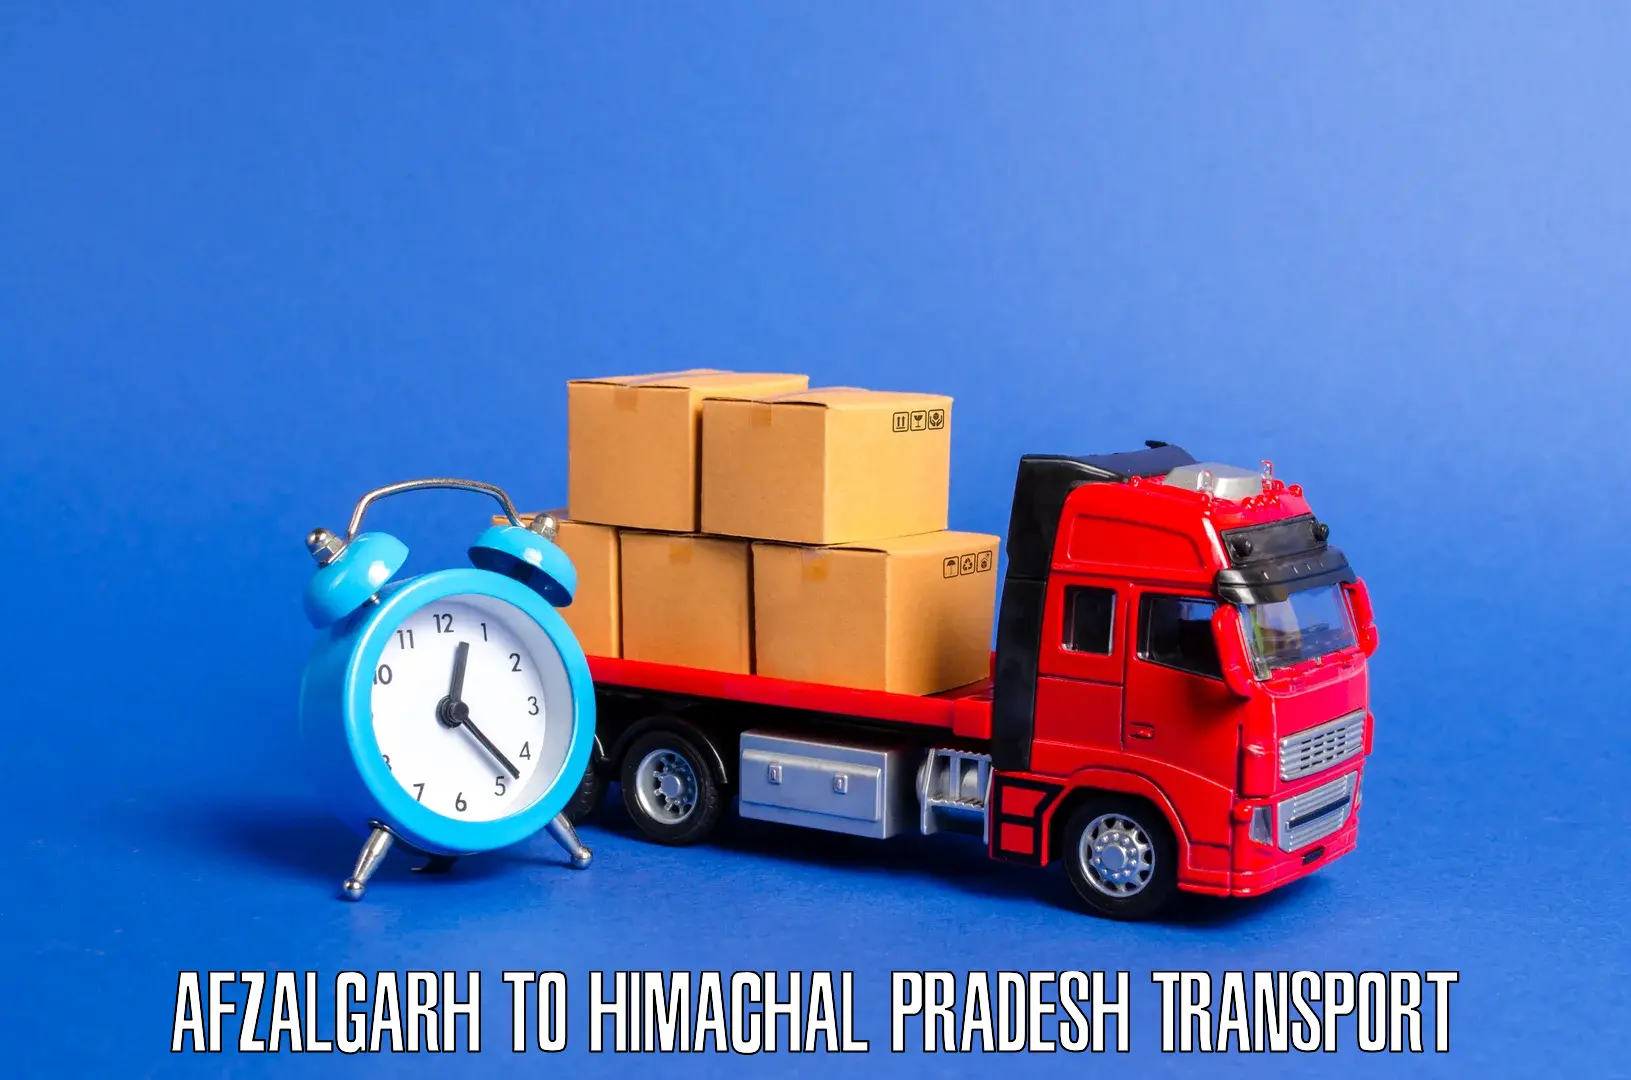 Pick up transport service Afzalgarh to Chamba